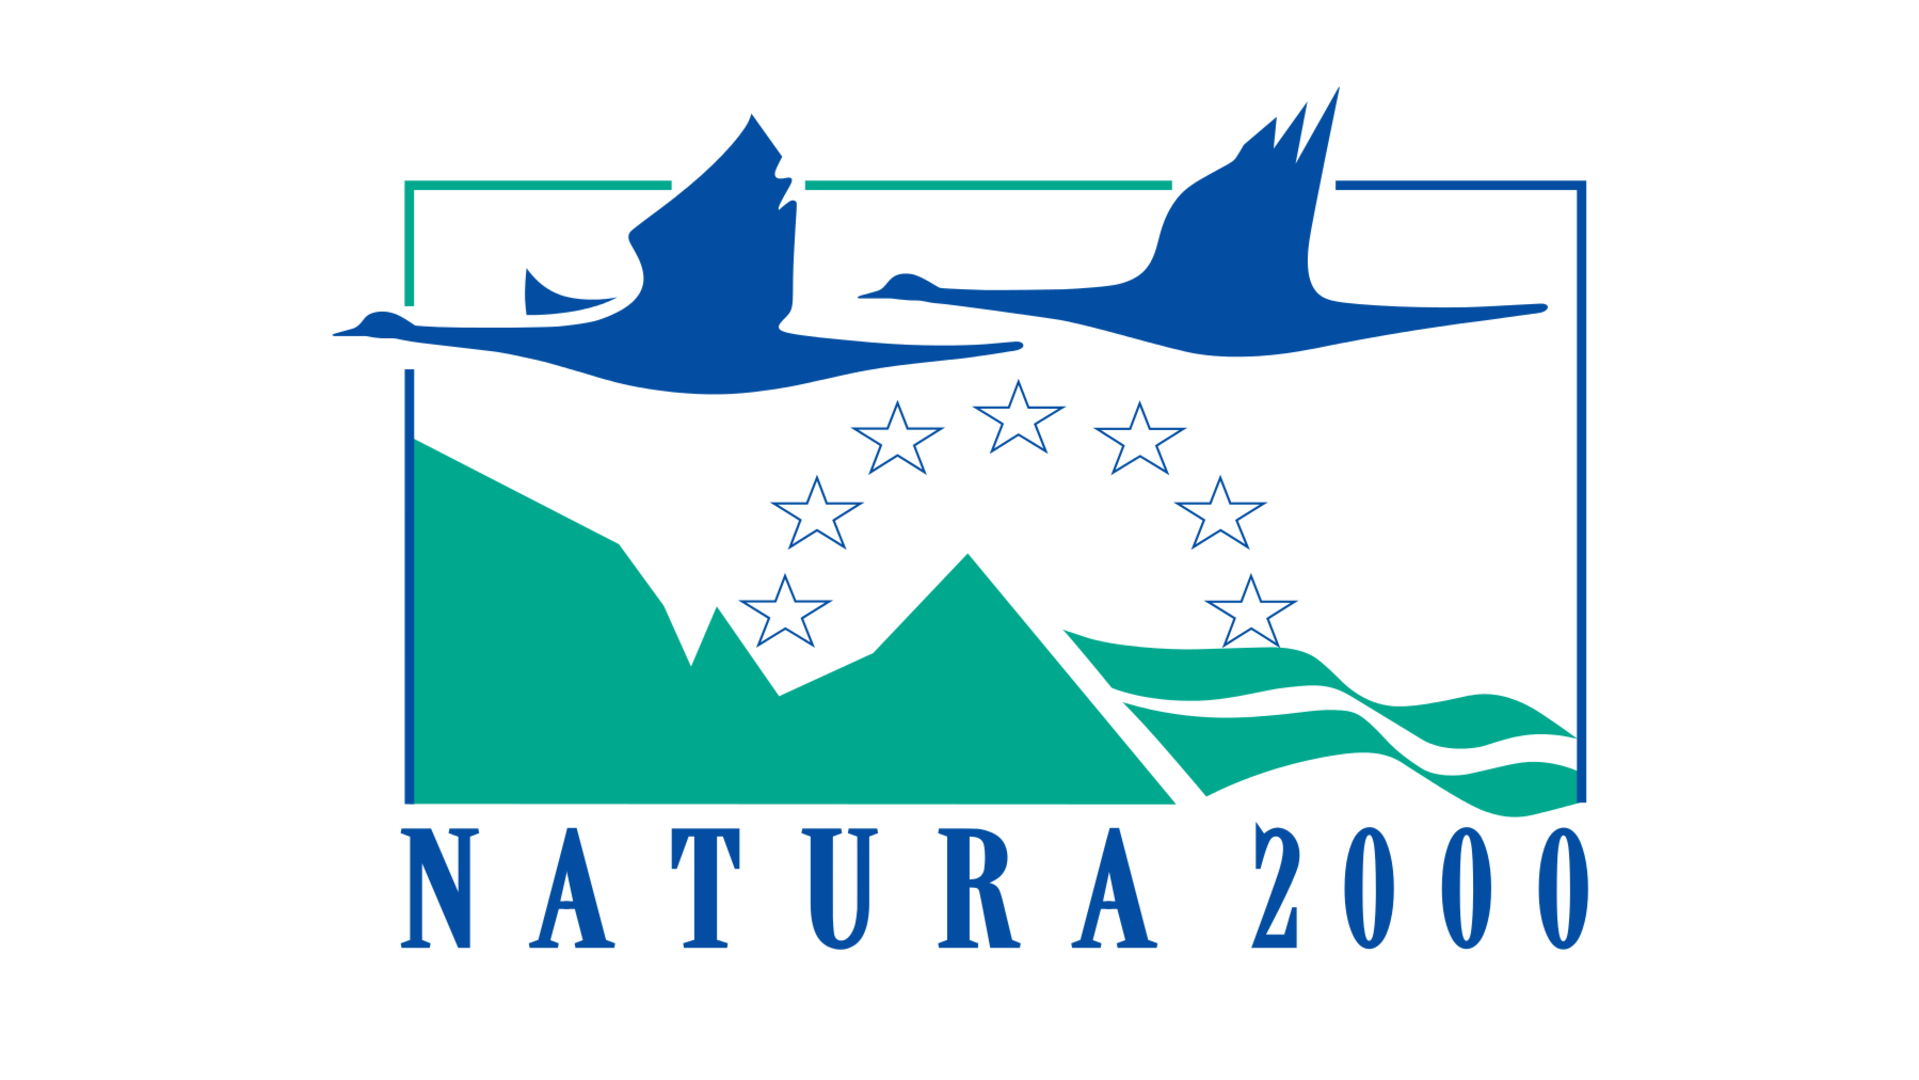 More information about "Παράταση έως 30 Απριλίου στη διαβούλευση για τις Ειδικές Περιβαλλοντικές μελέτες σε 3 περιοχές Natura 2000"